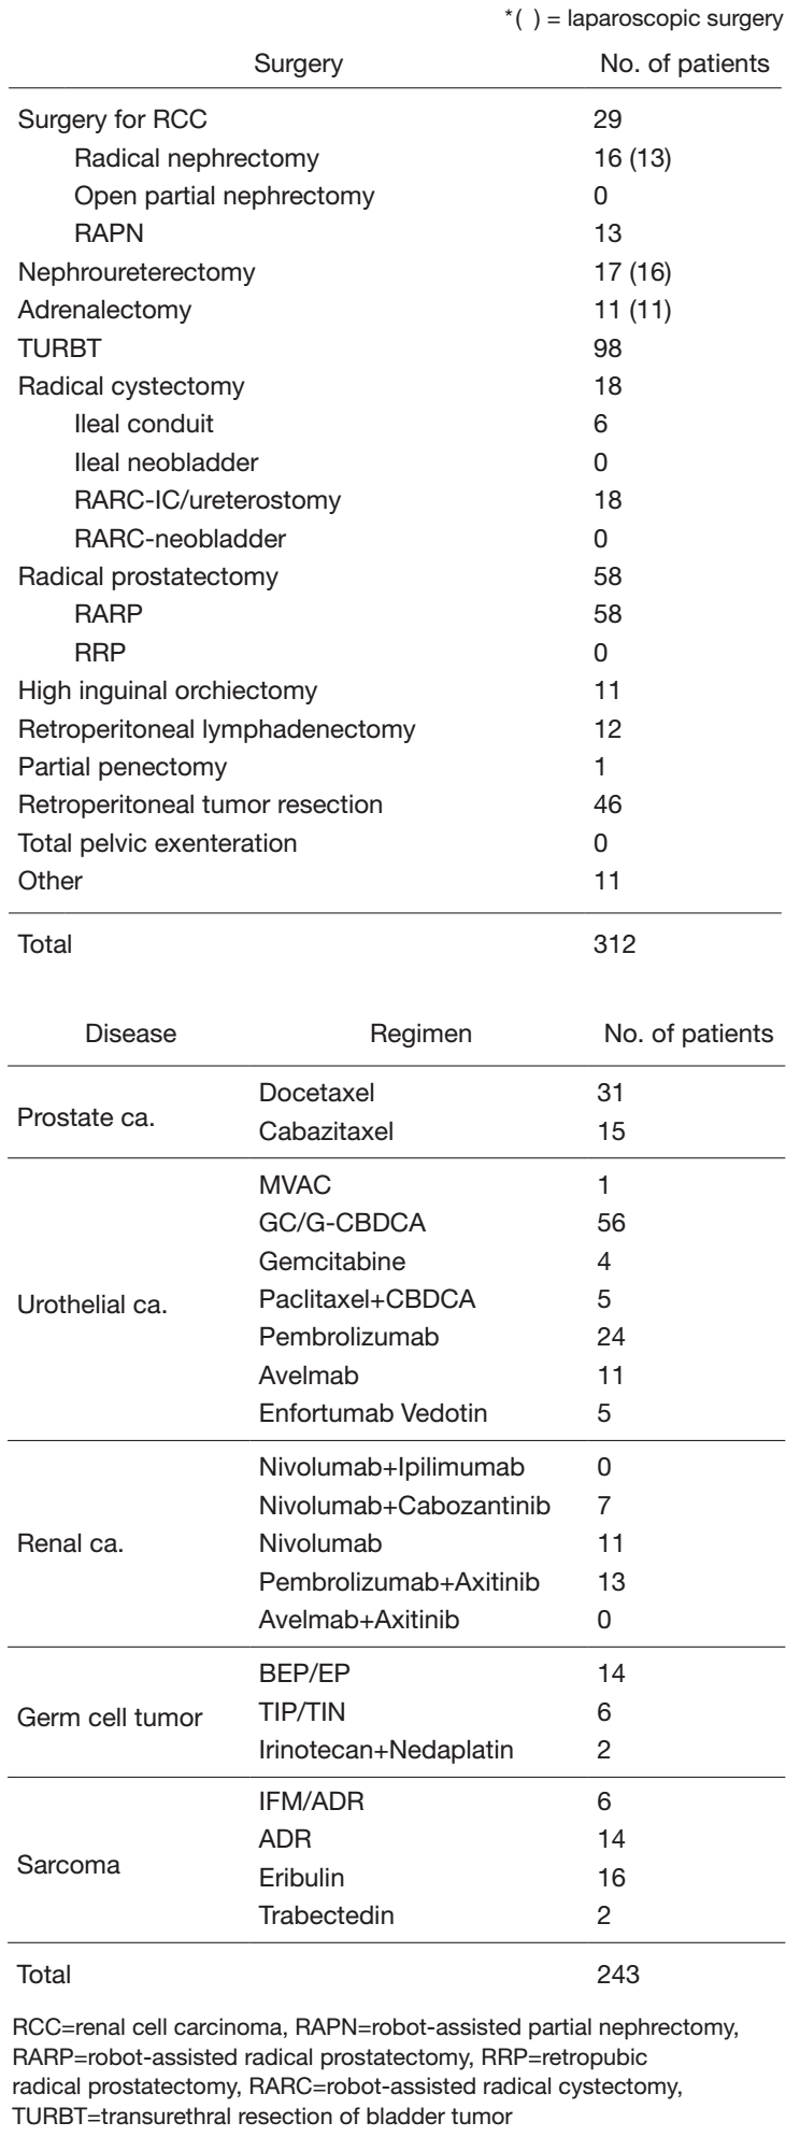 Table 1. Patients statistics: Major treatment